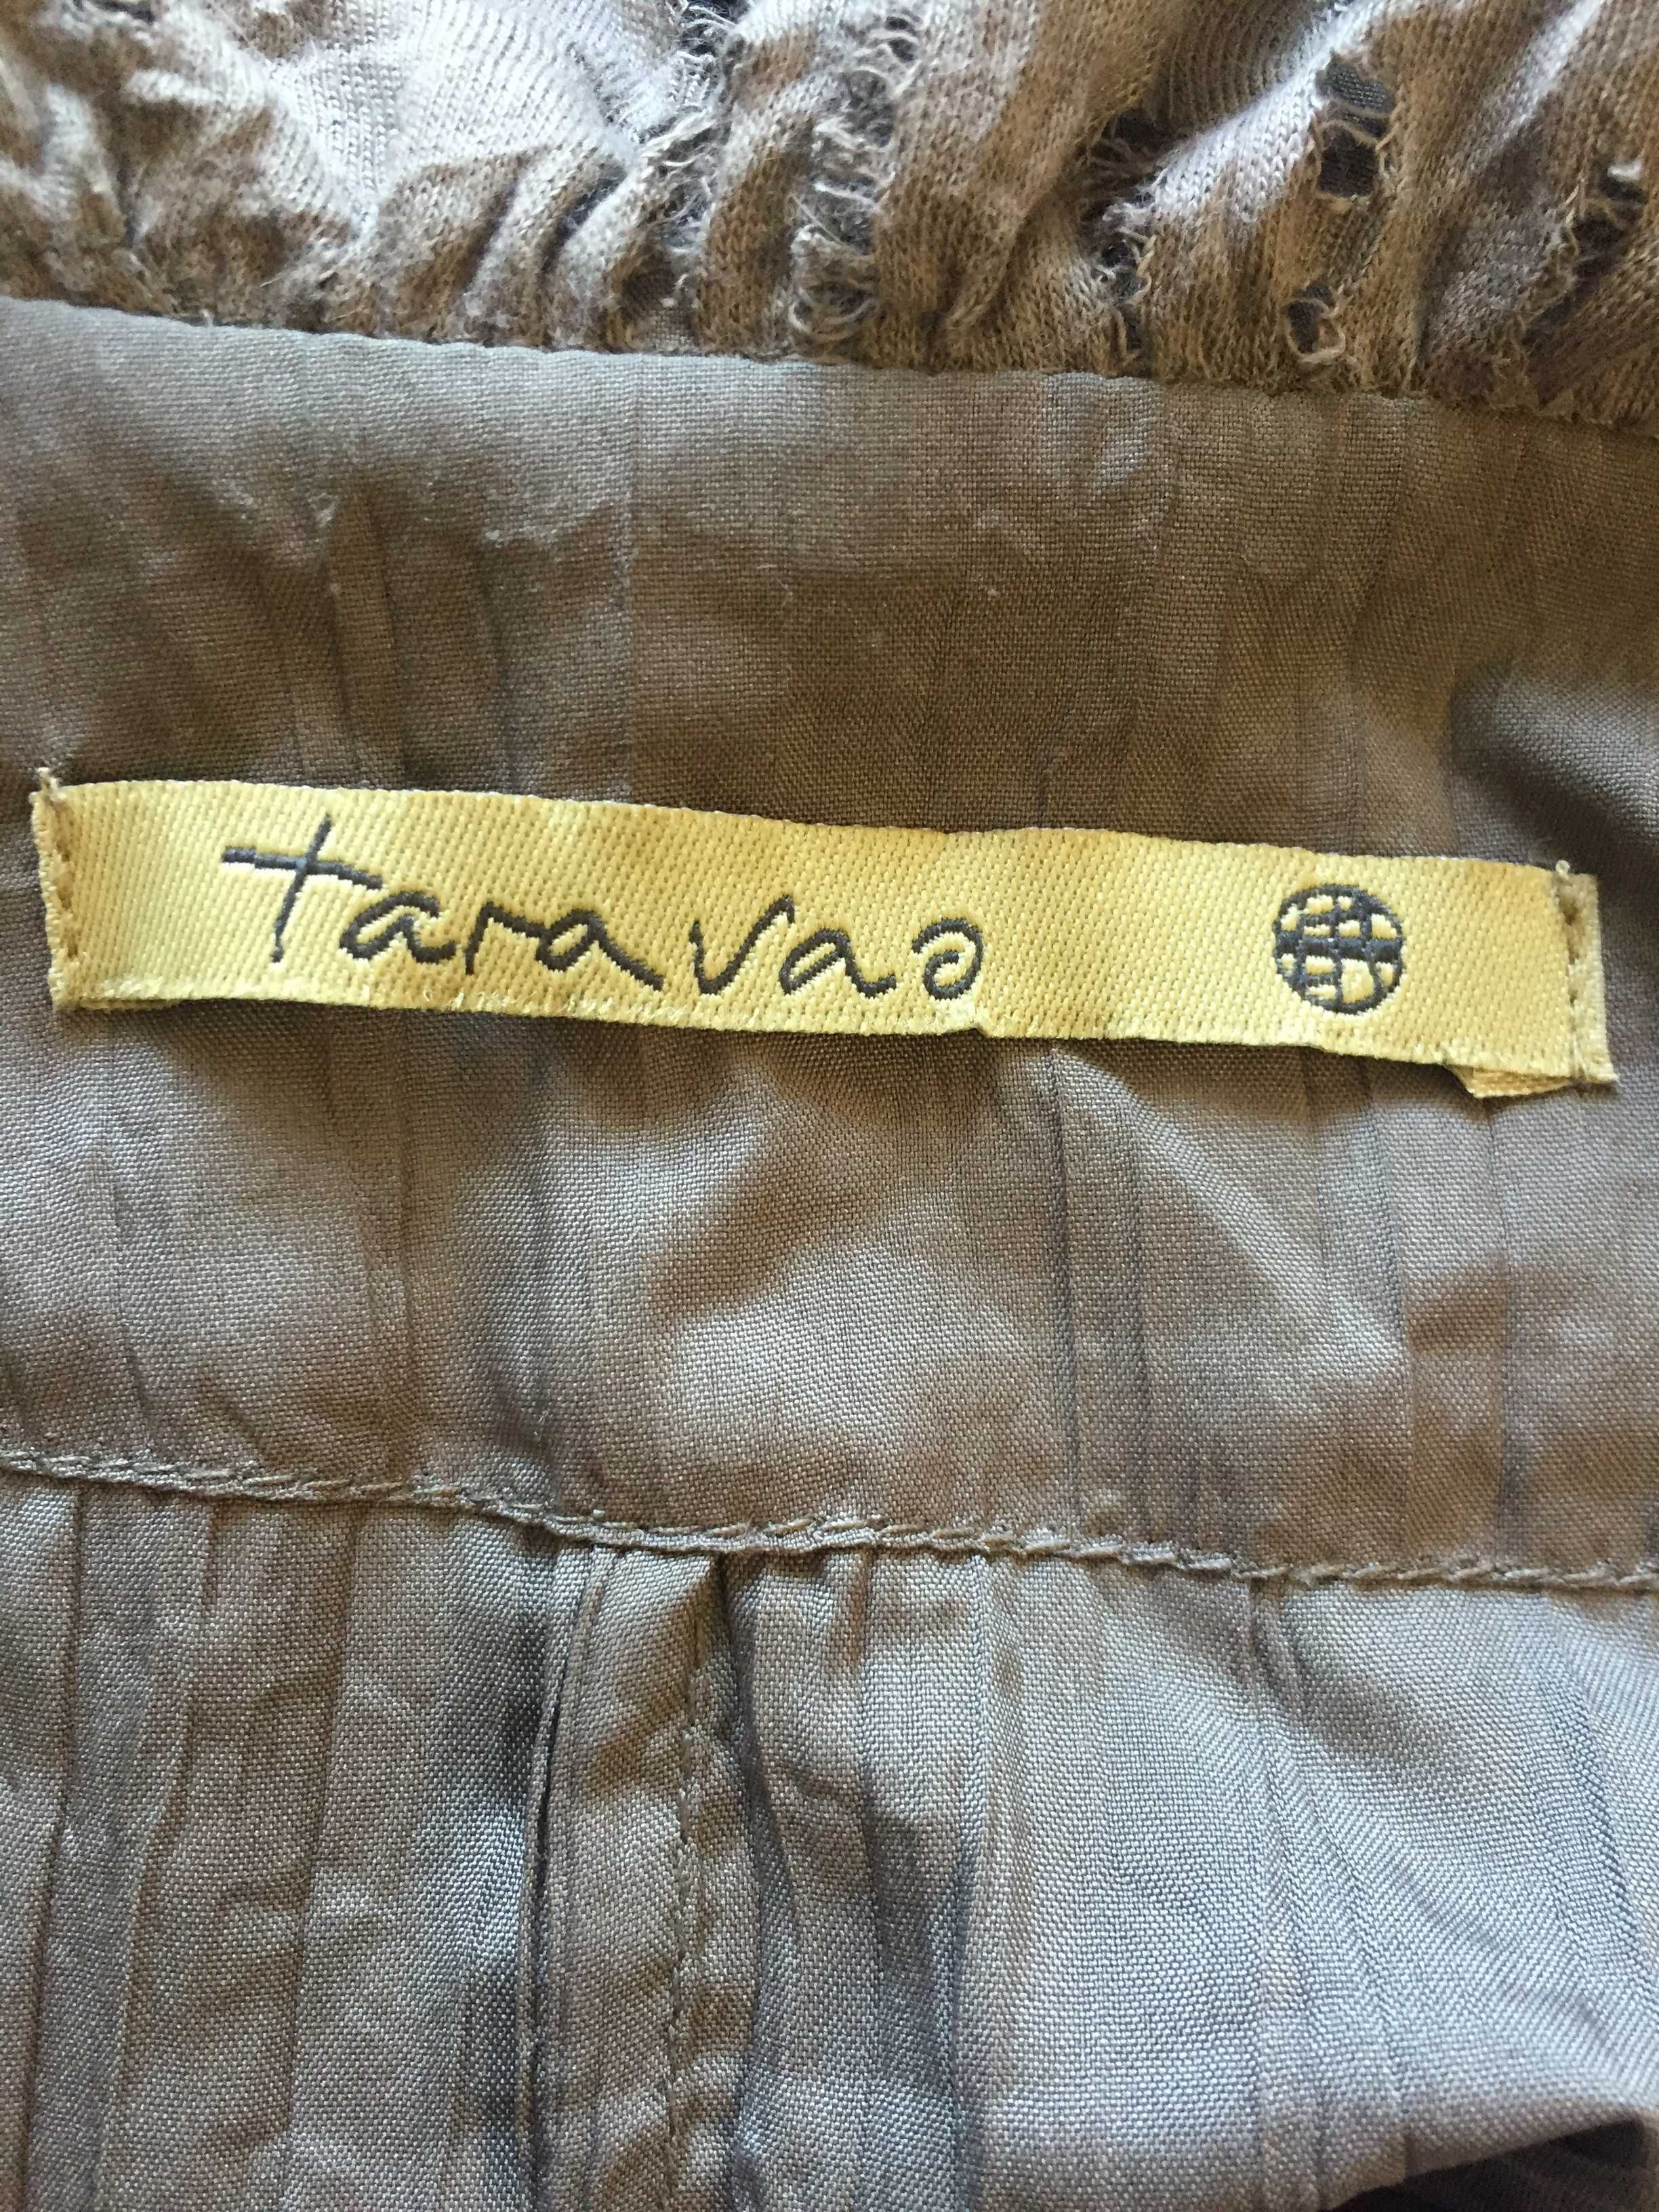 Легкий пиджак, жакет, ветровка taravao 50-52 р.